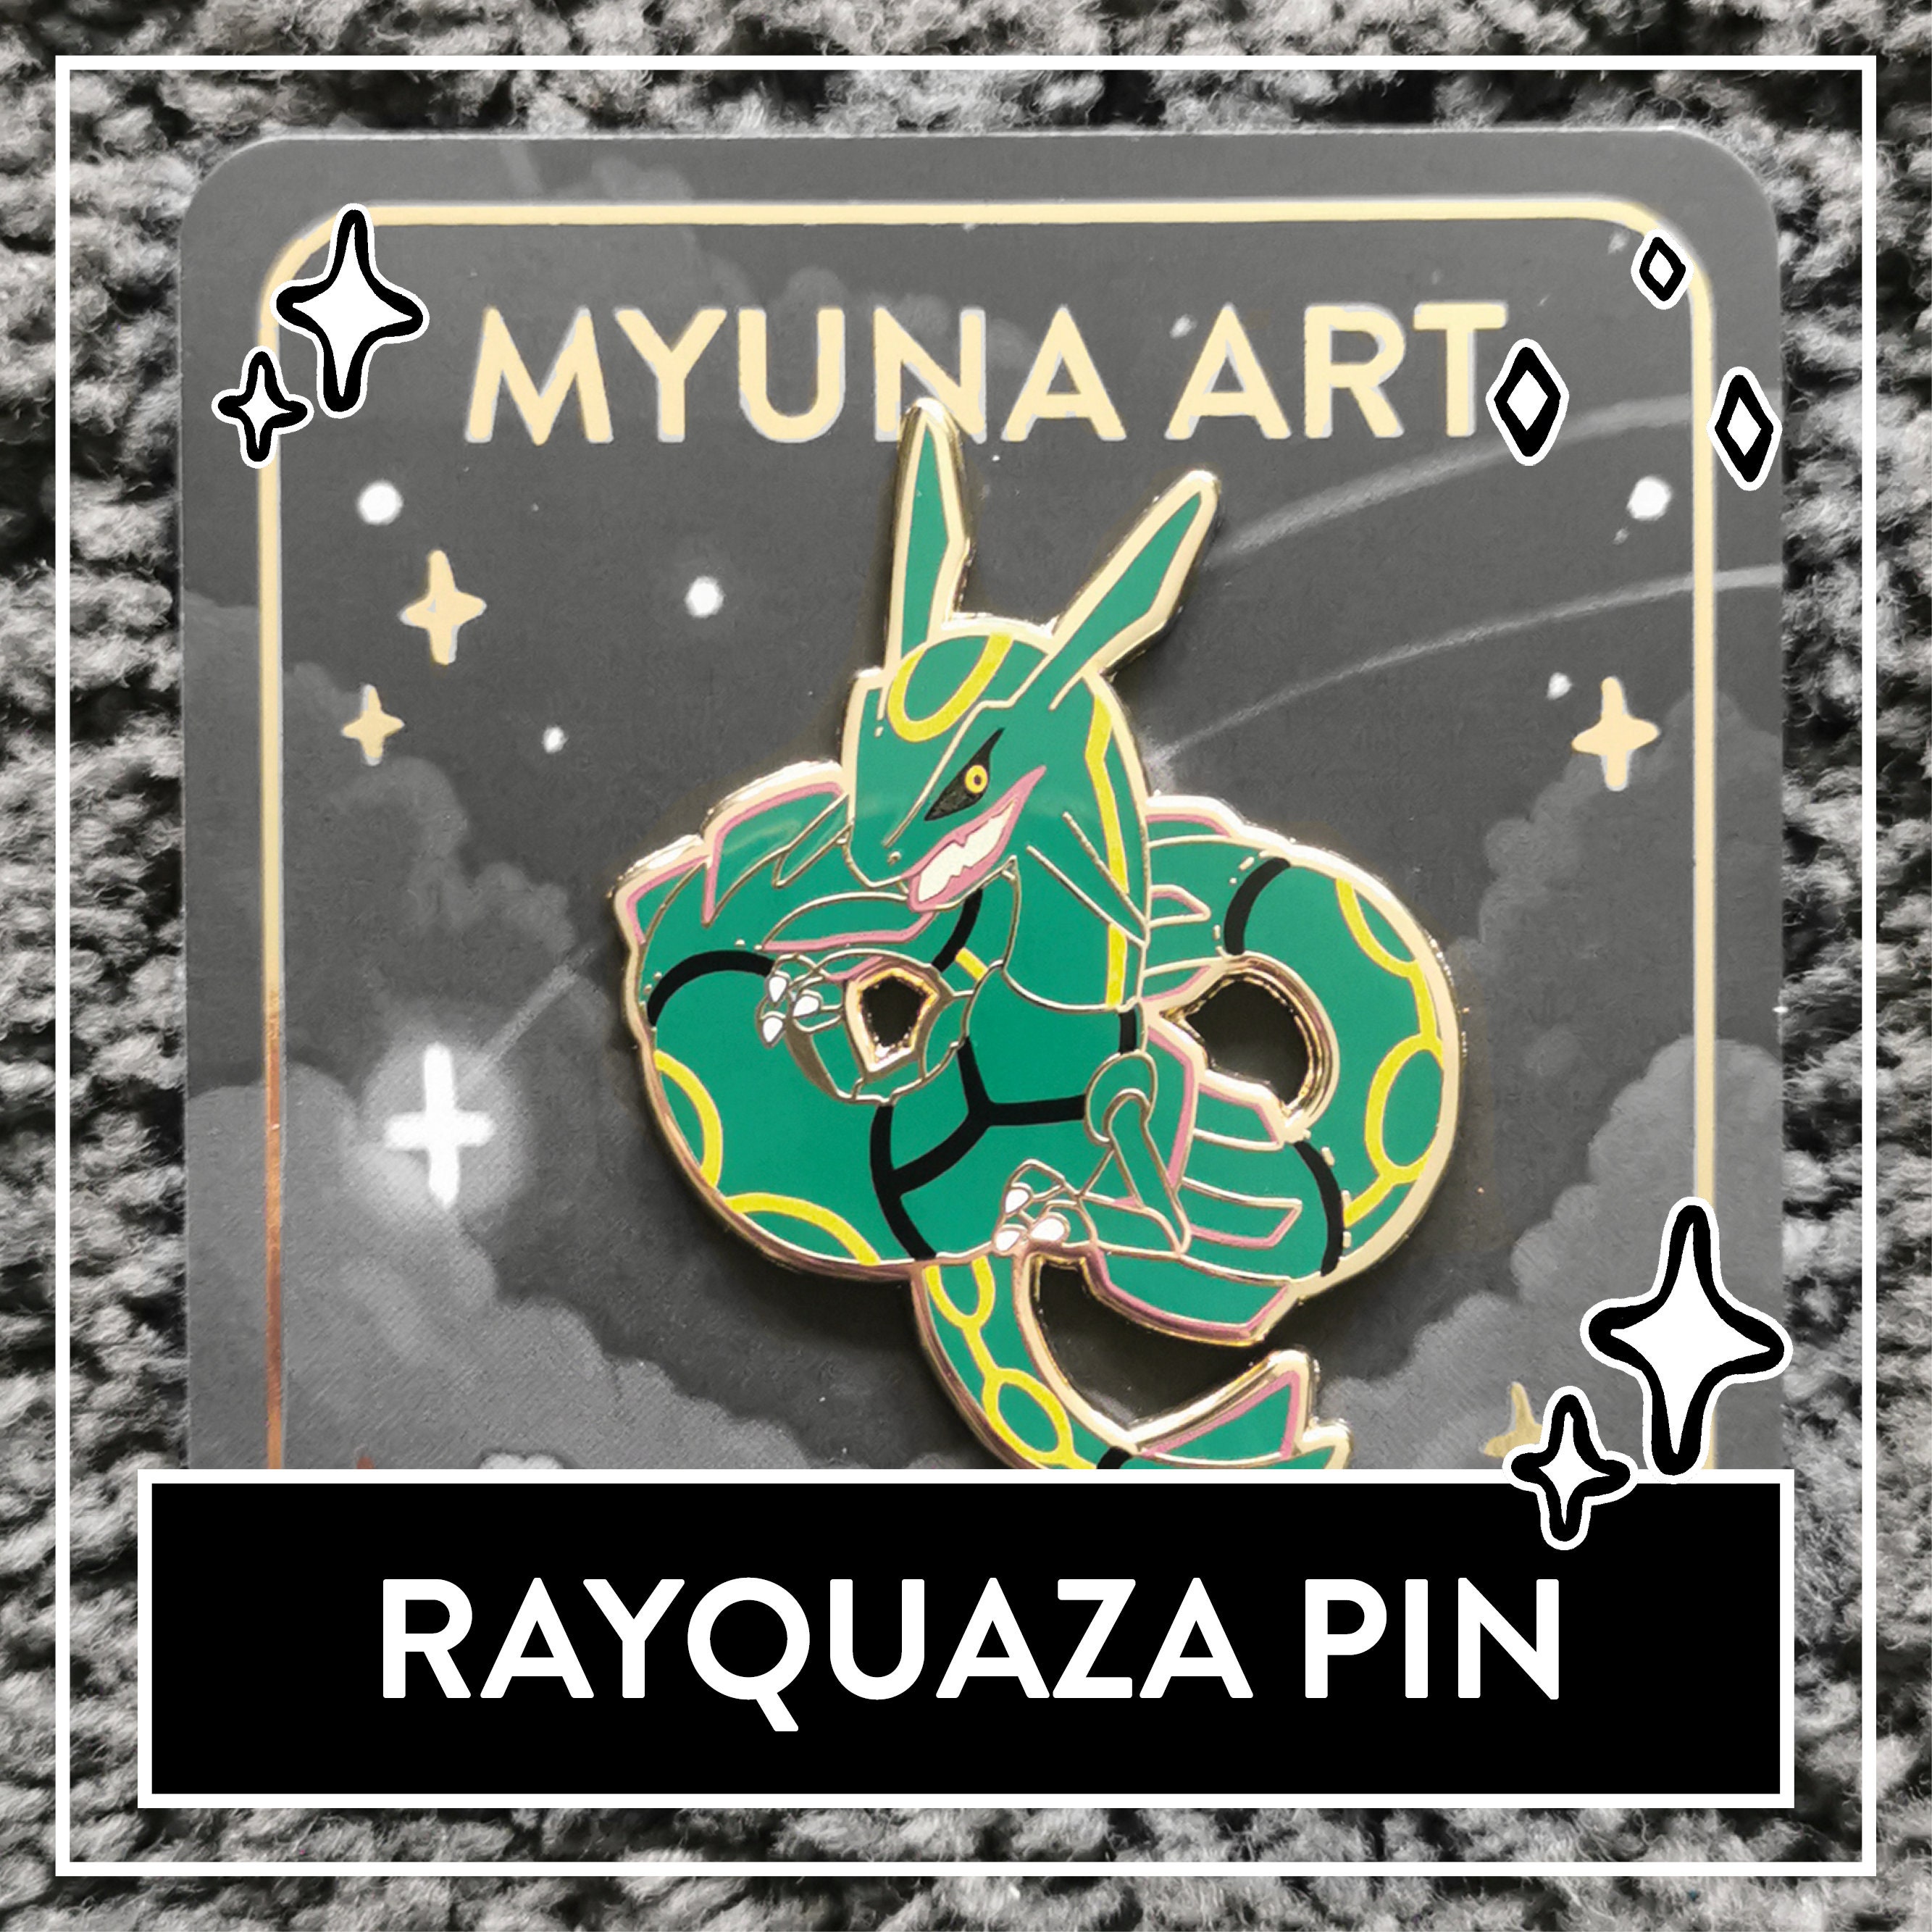 Myuna's XXL Shiny Rayquaza Pin Big Fanart Sky Dragon -  Finland